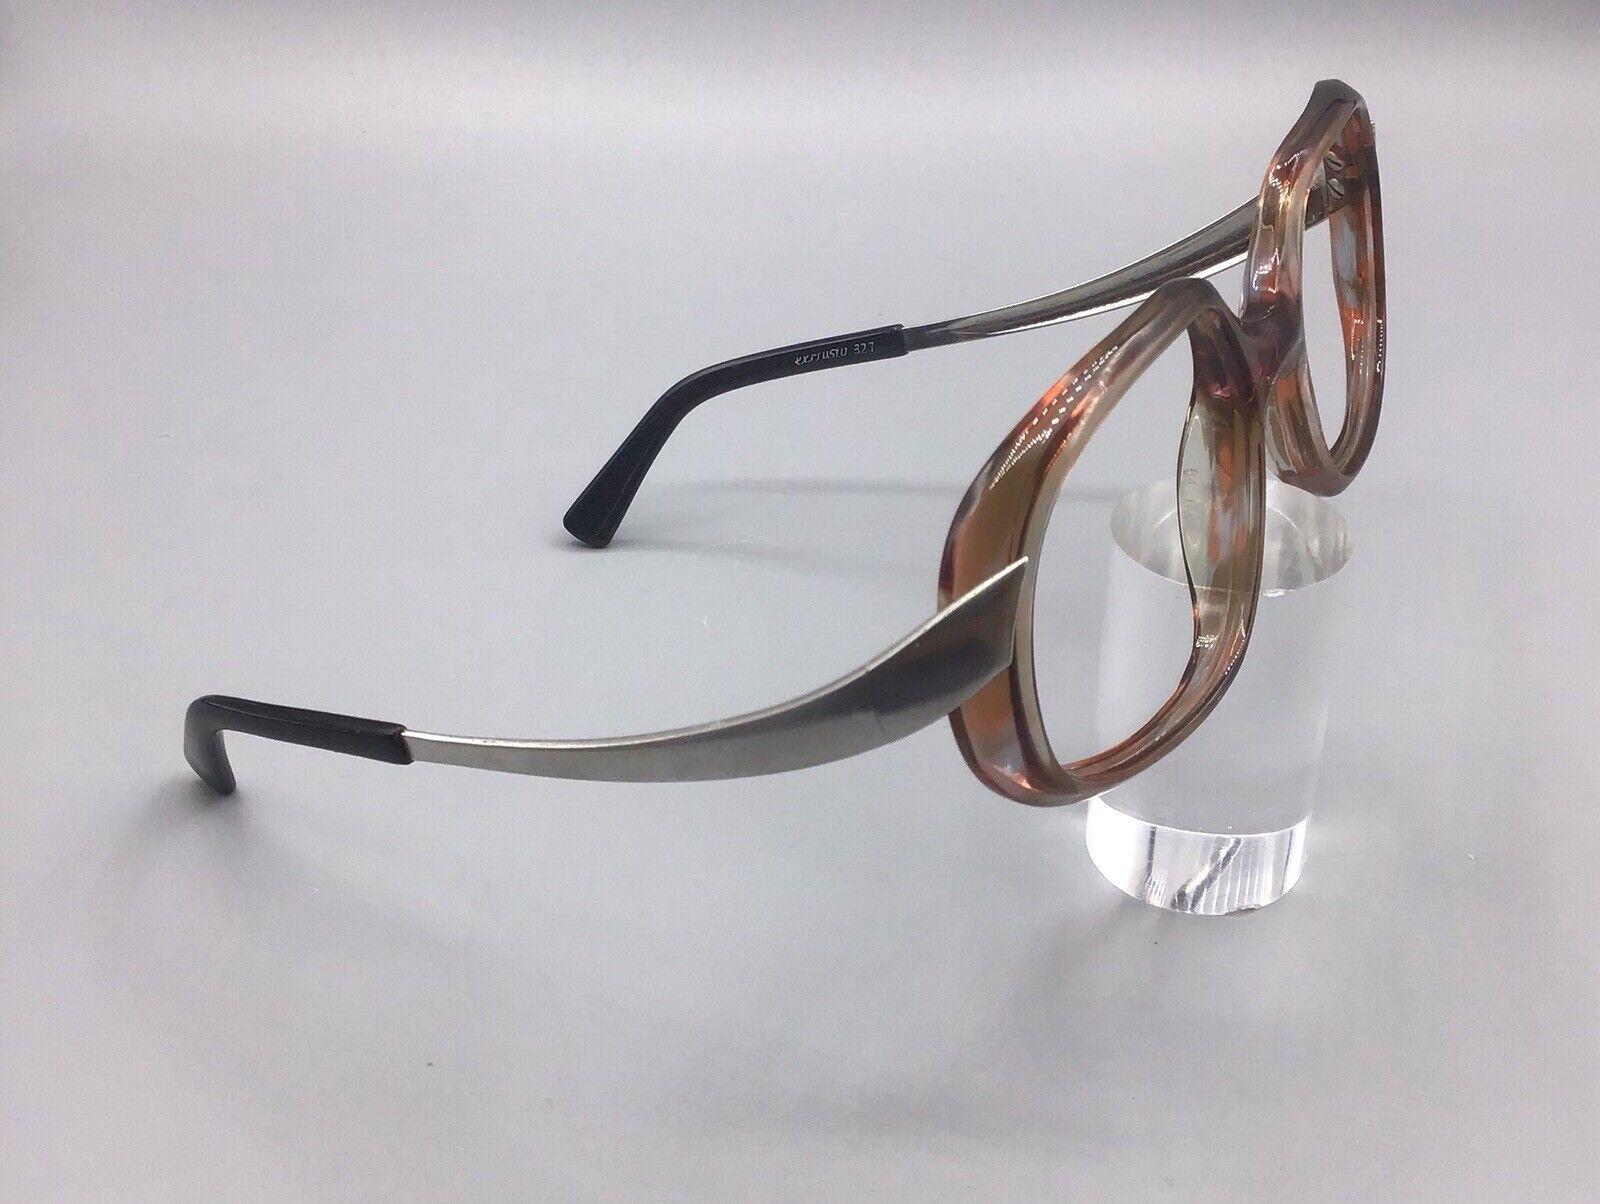 Rodenstock excrustu 327 occhiale vintage brillen eyewear glasses